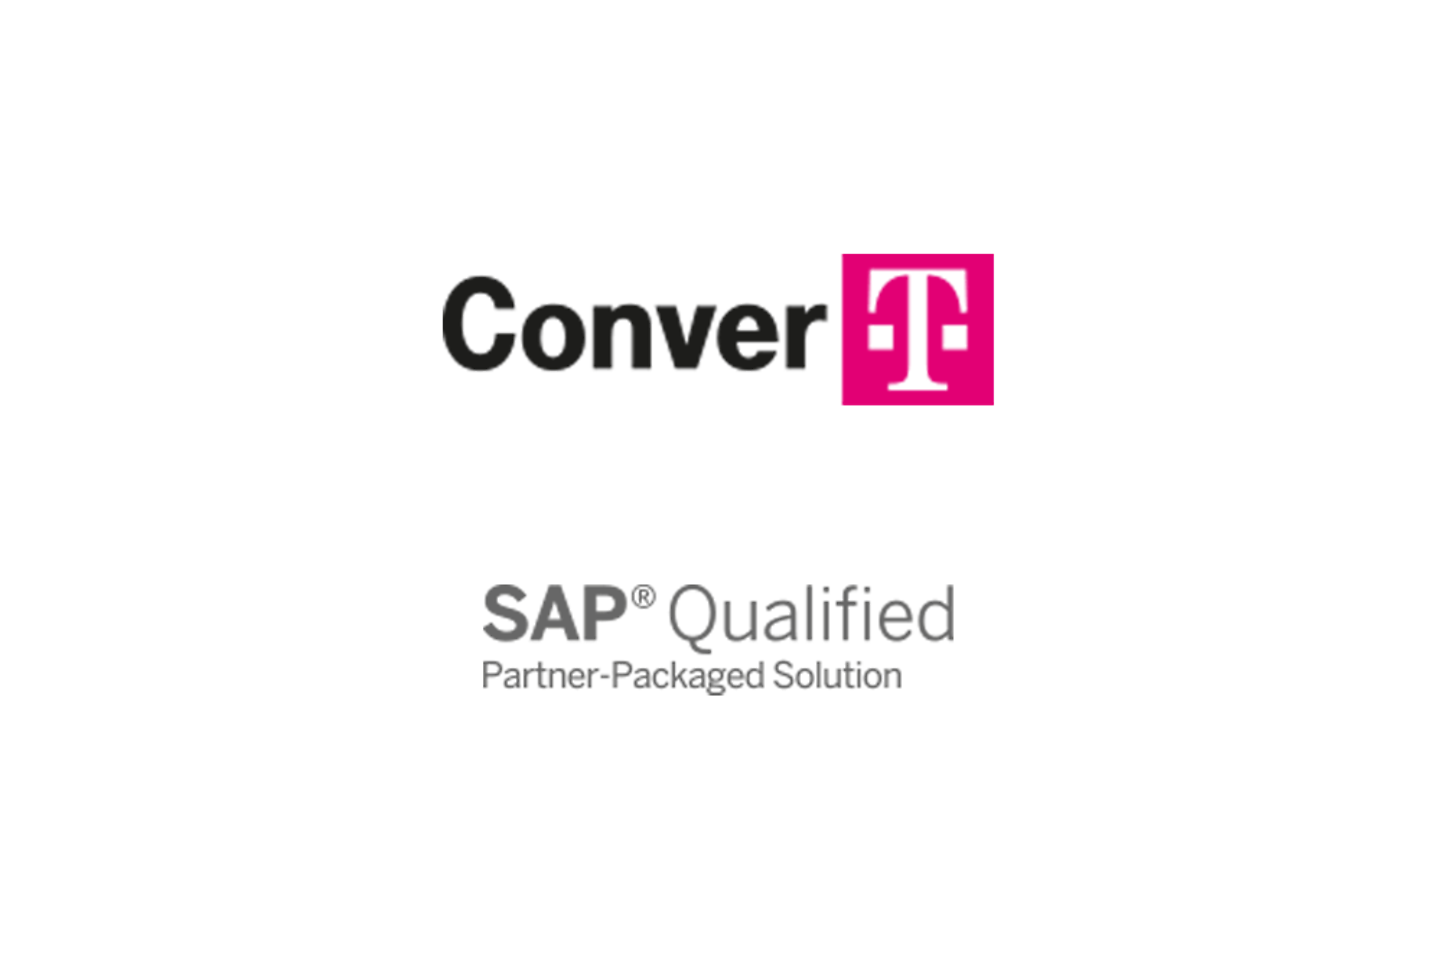 Superfície branca com logo ConverT e letras certificadas SAP